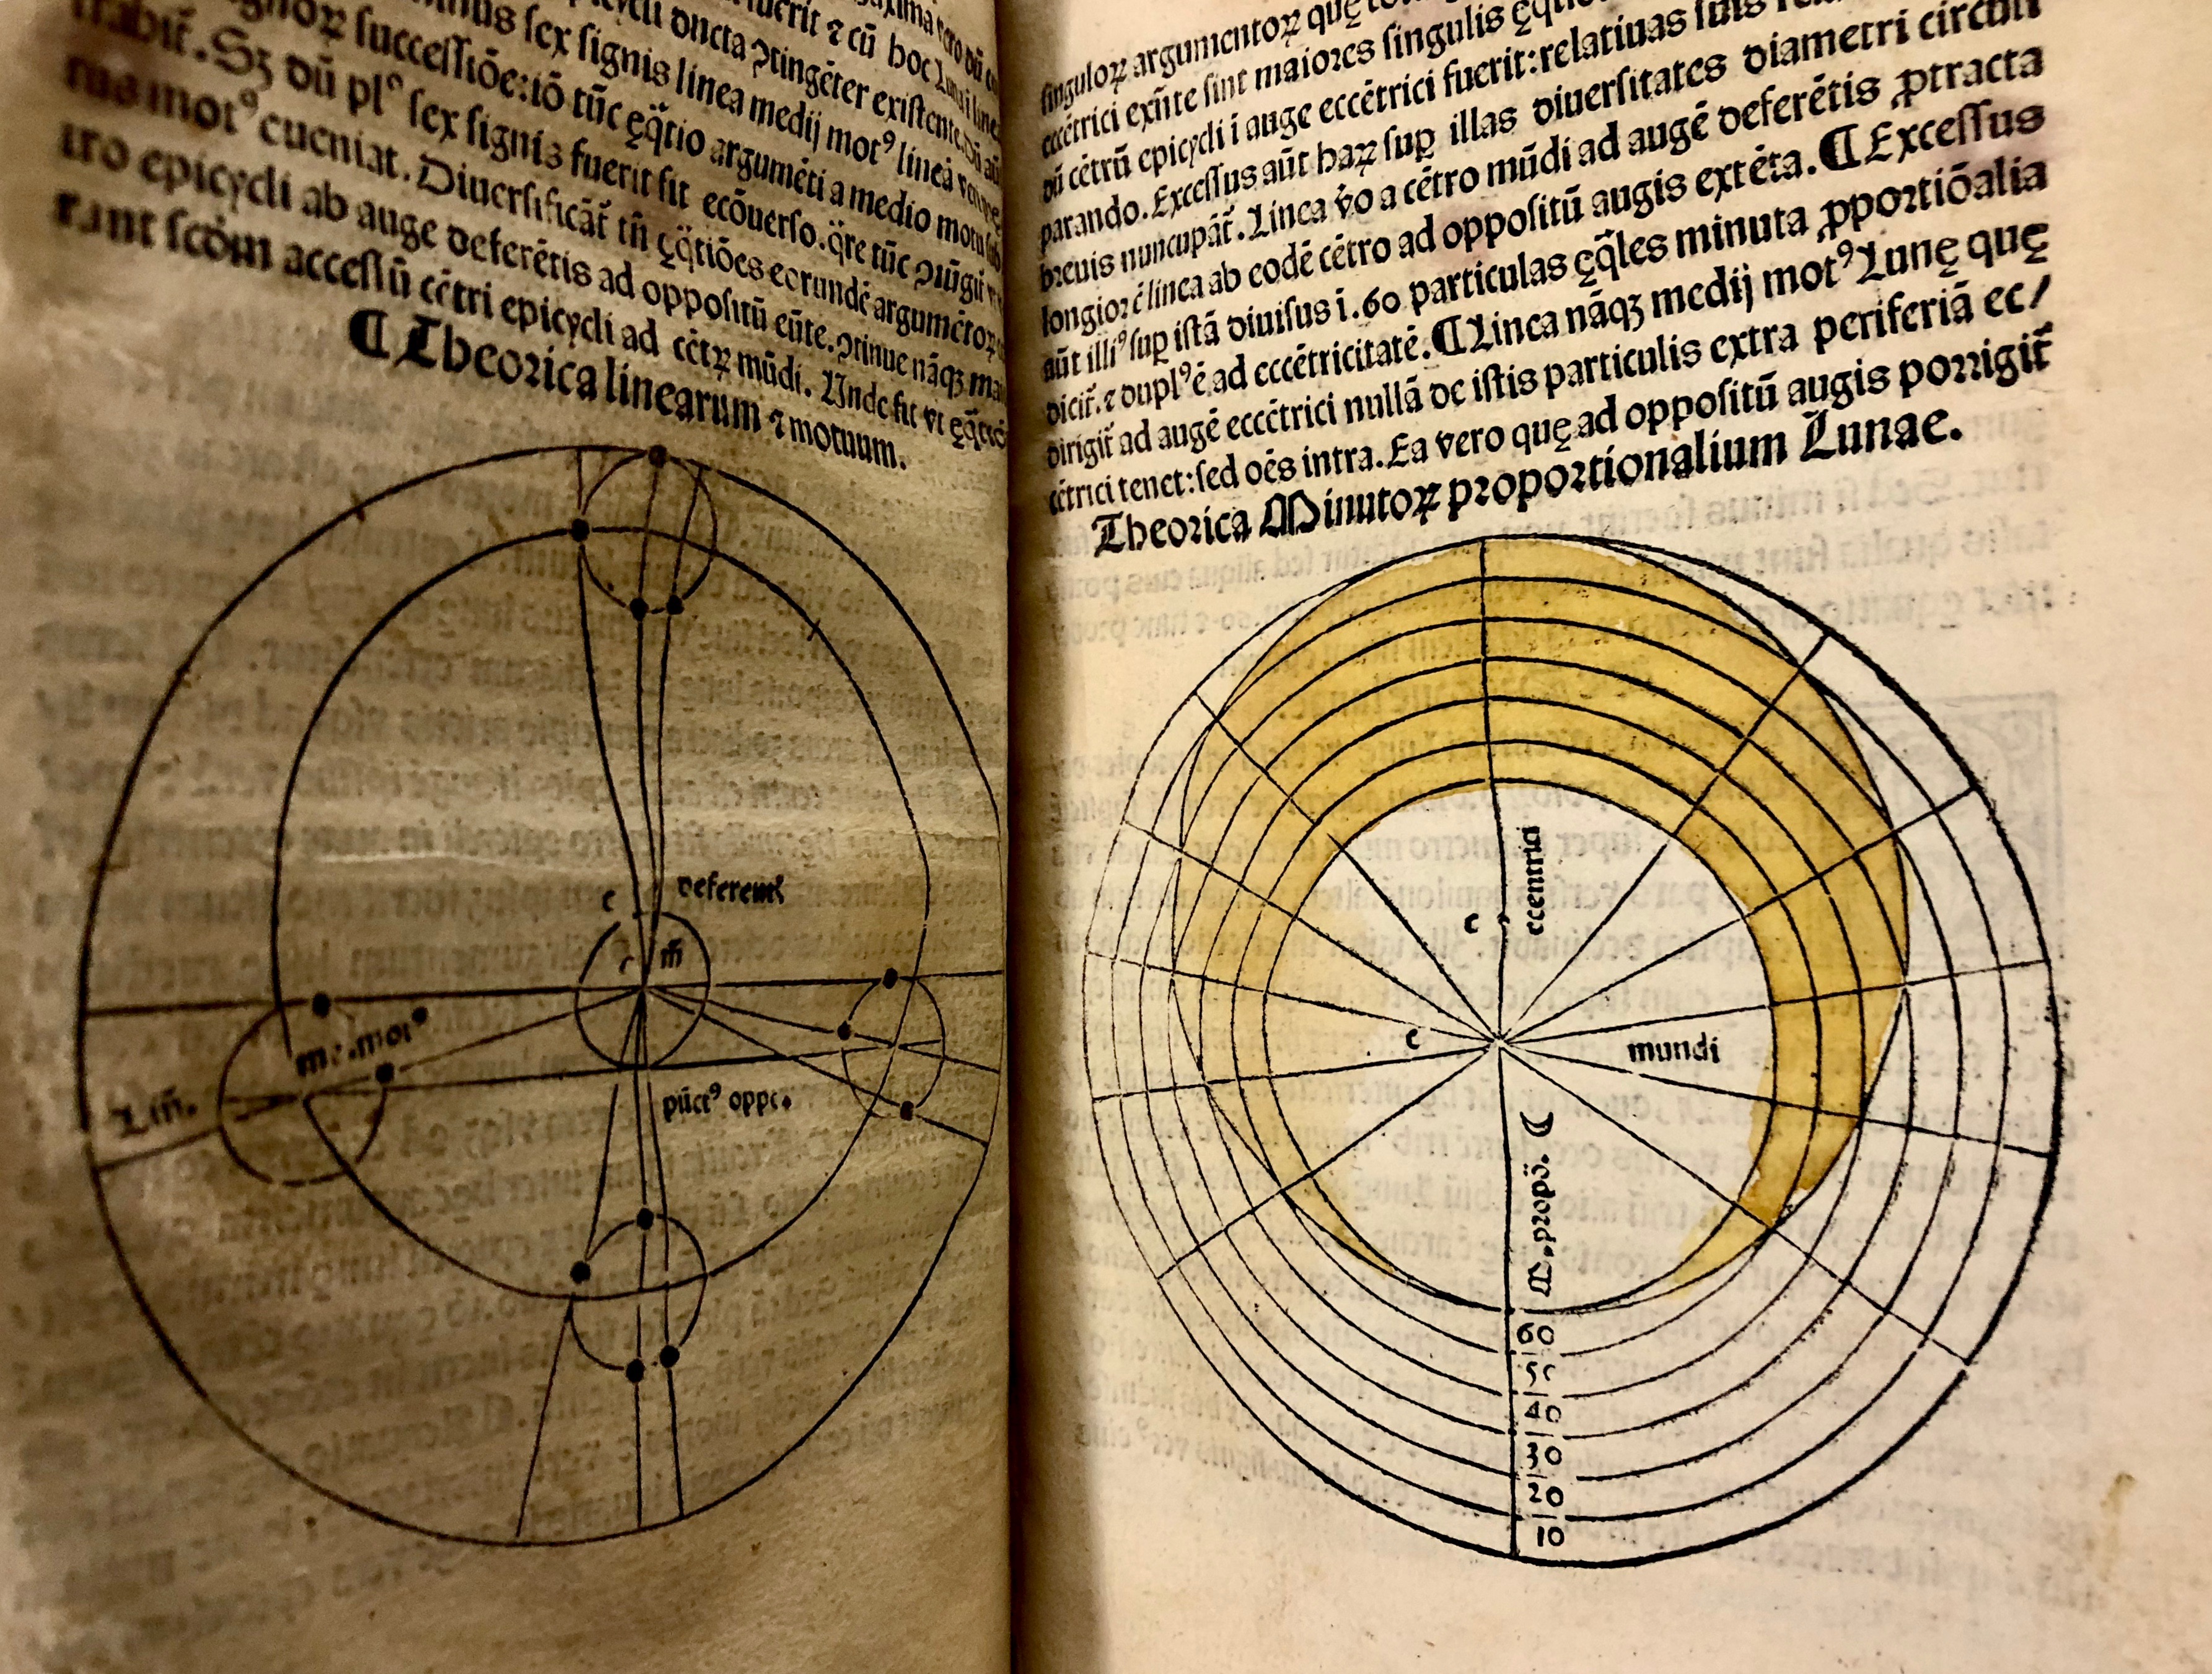 Lunar charts in 'Nouicijs adolescetib': ad astronomica remp: capessenda aditu impenetratib' by Johannes de Sacro Bosco, 1482, Venice (Maddison Collection, 1D1) 